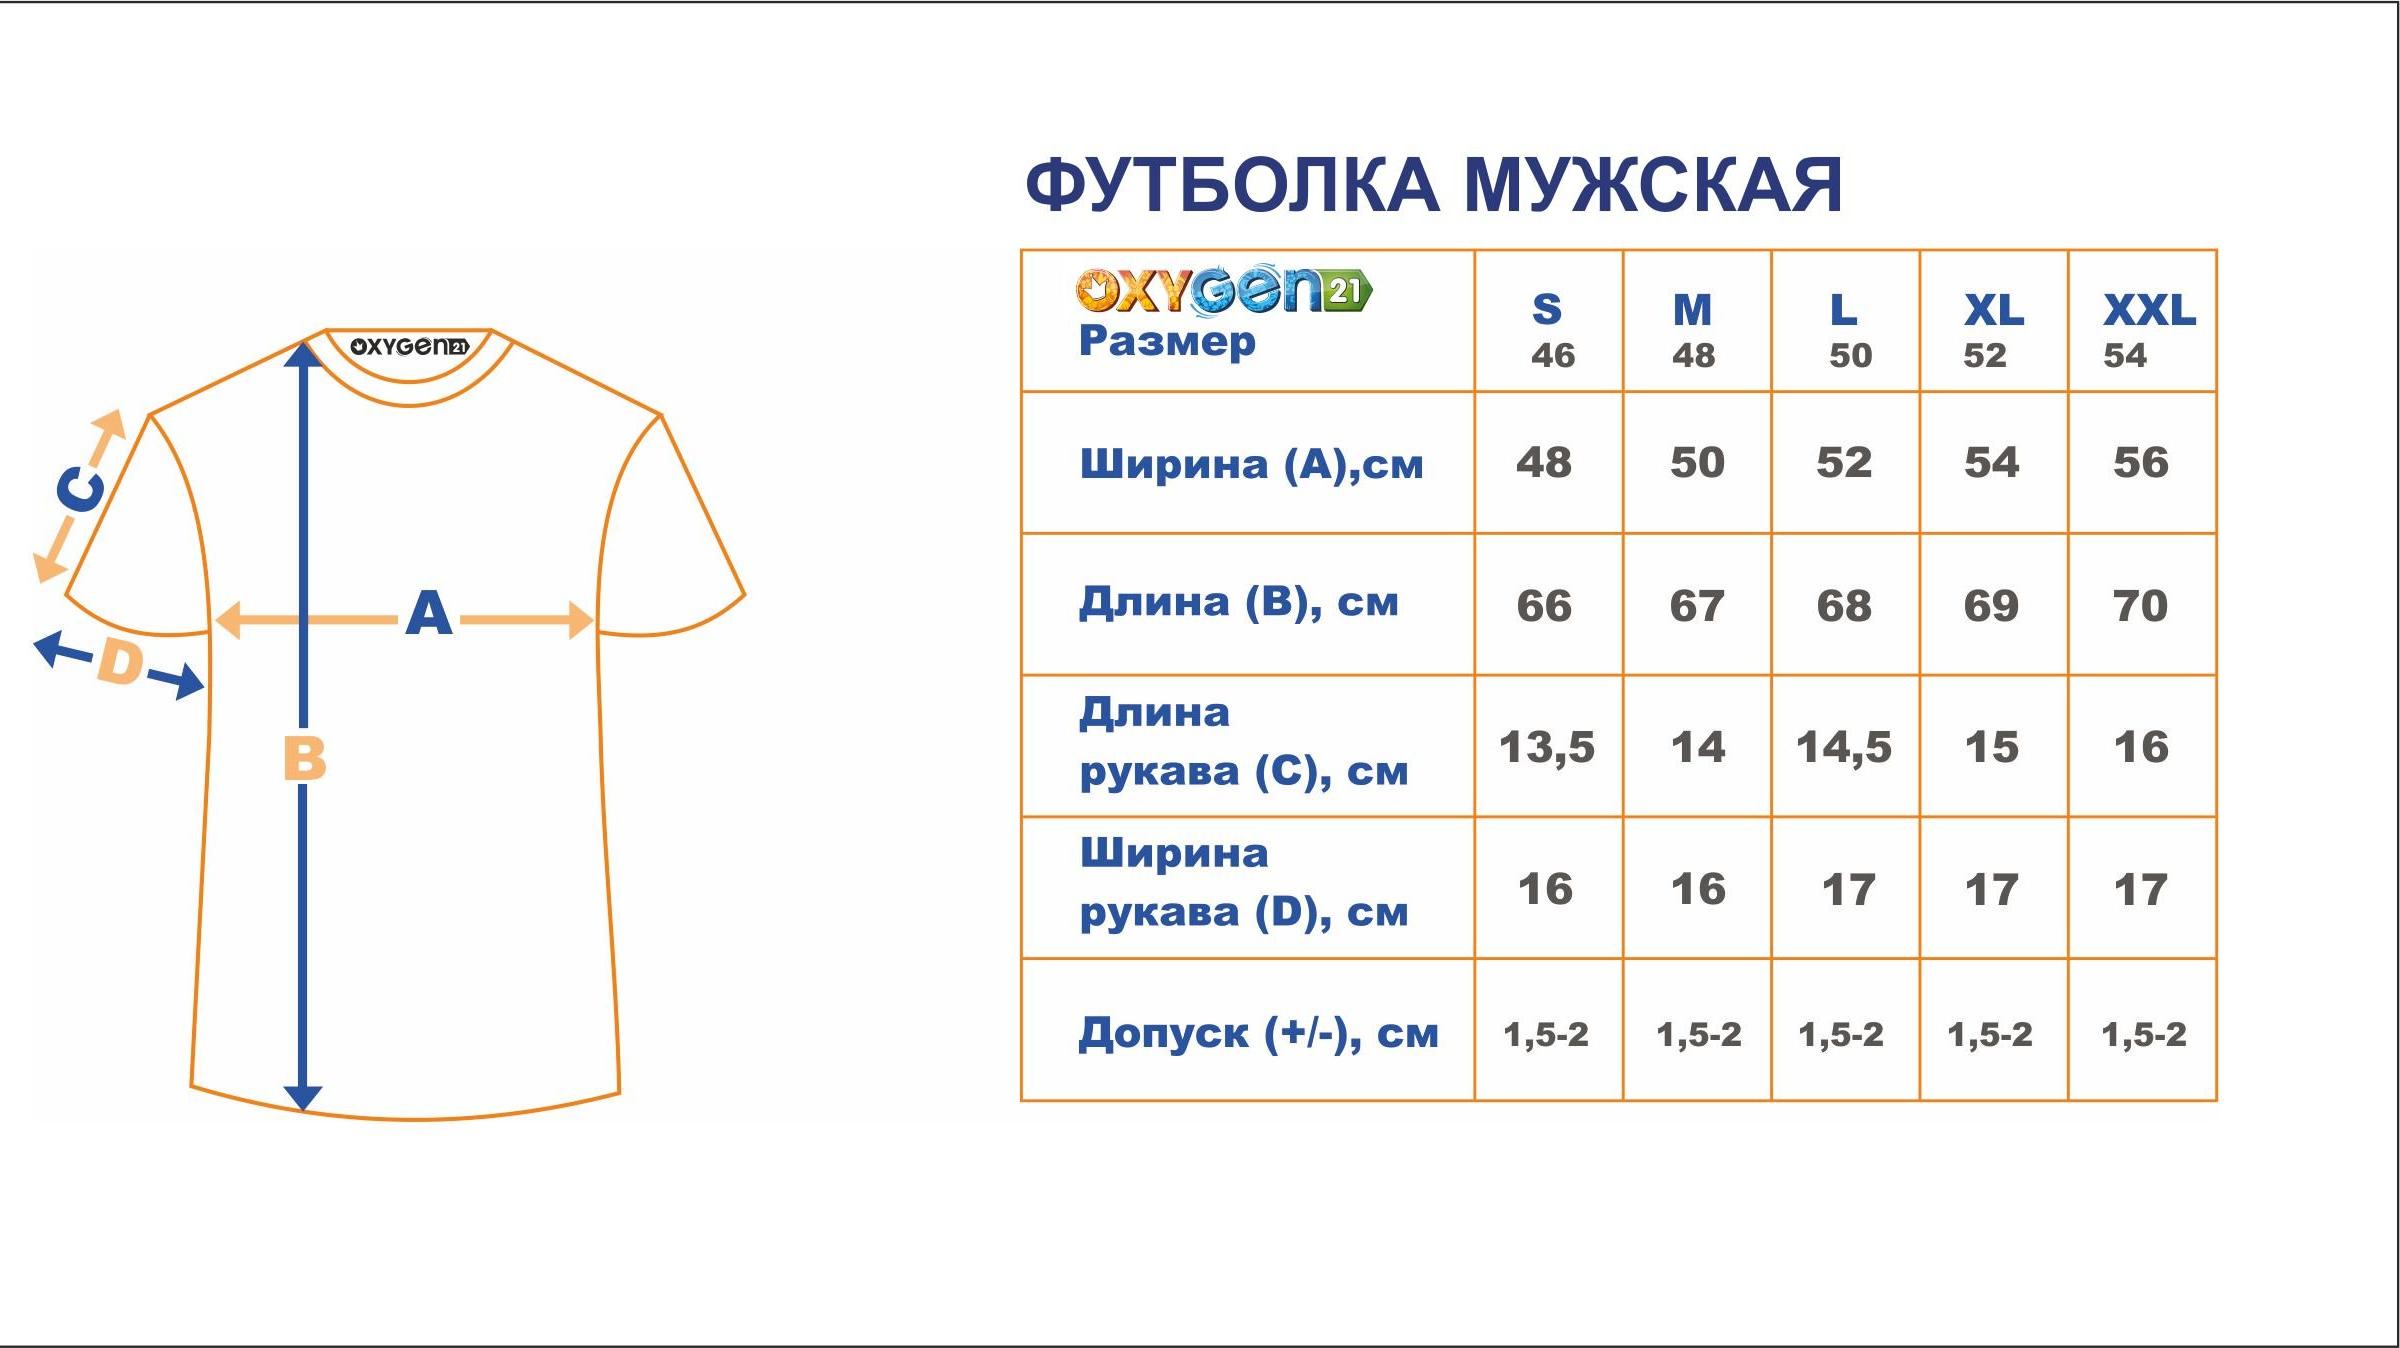 Размерная таблица одежды для мужчин футболки